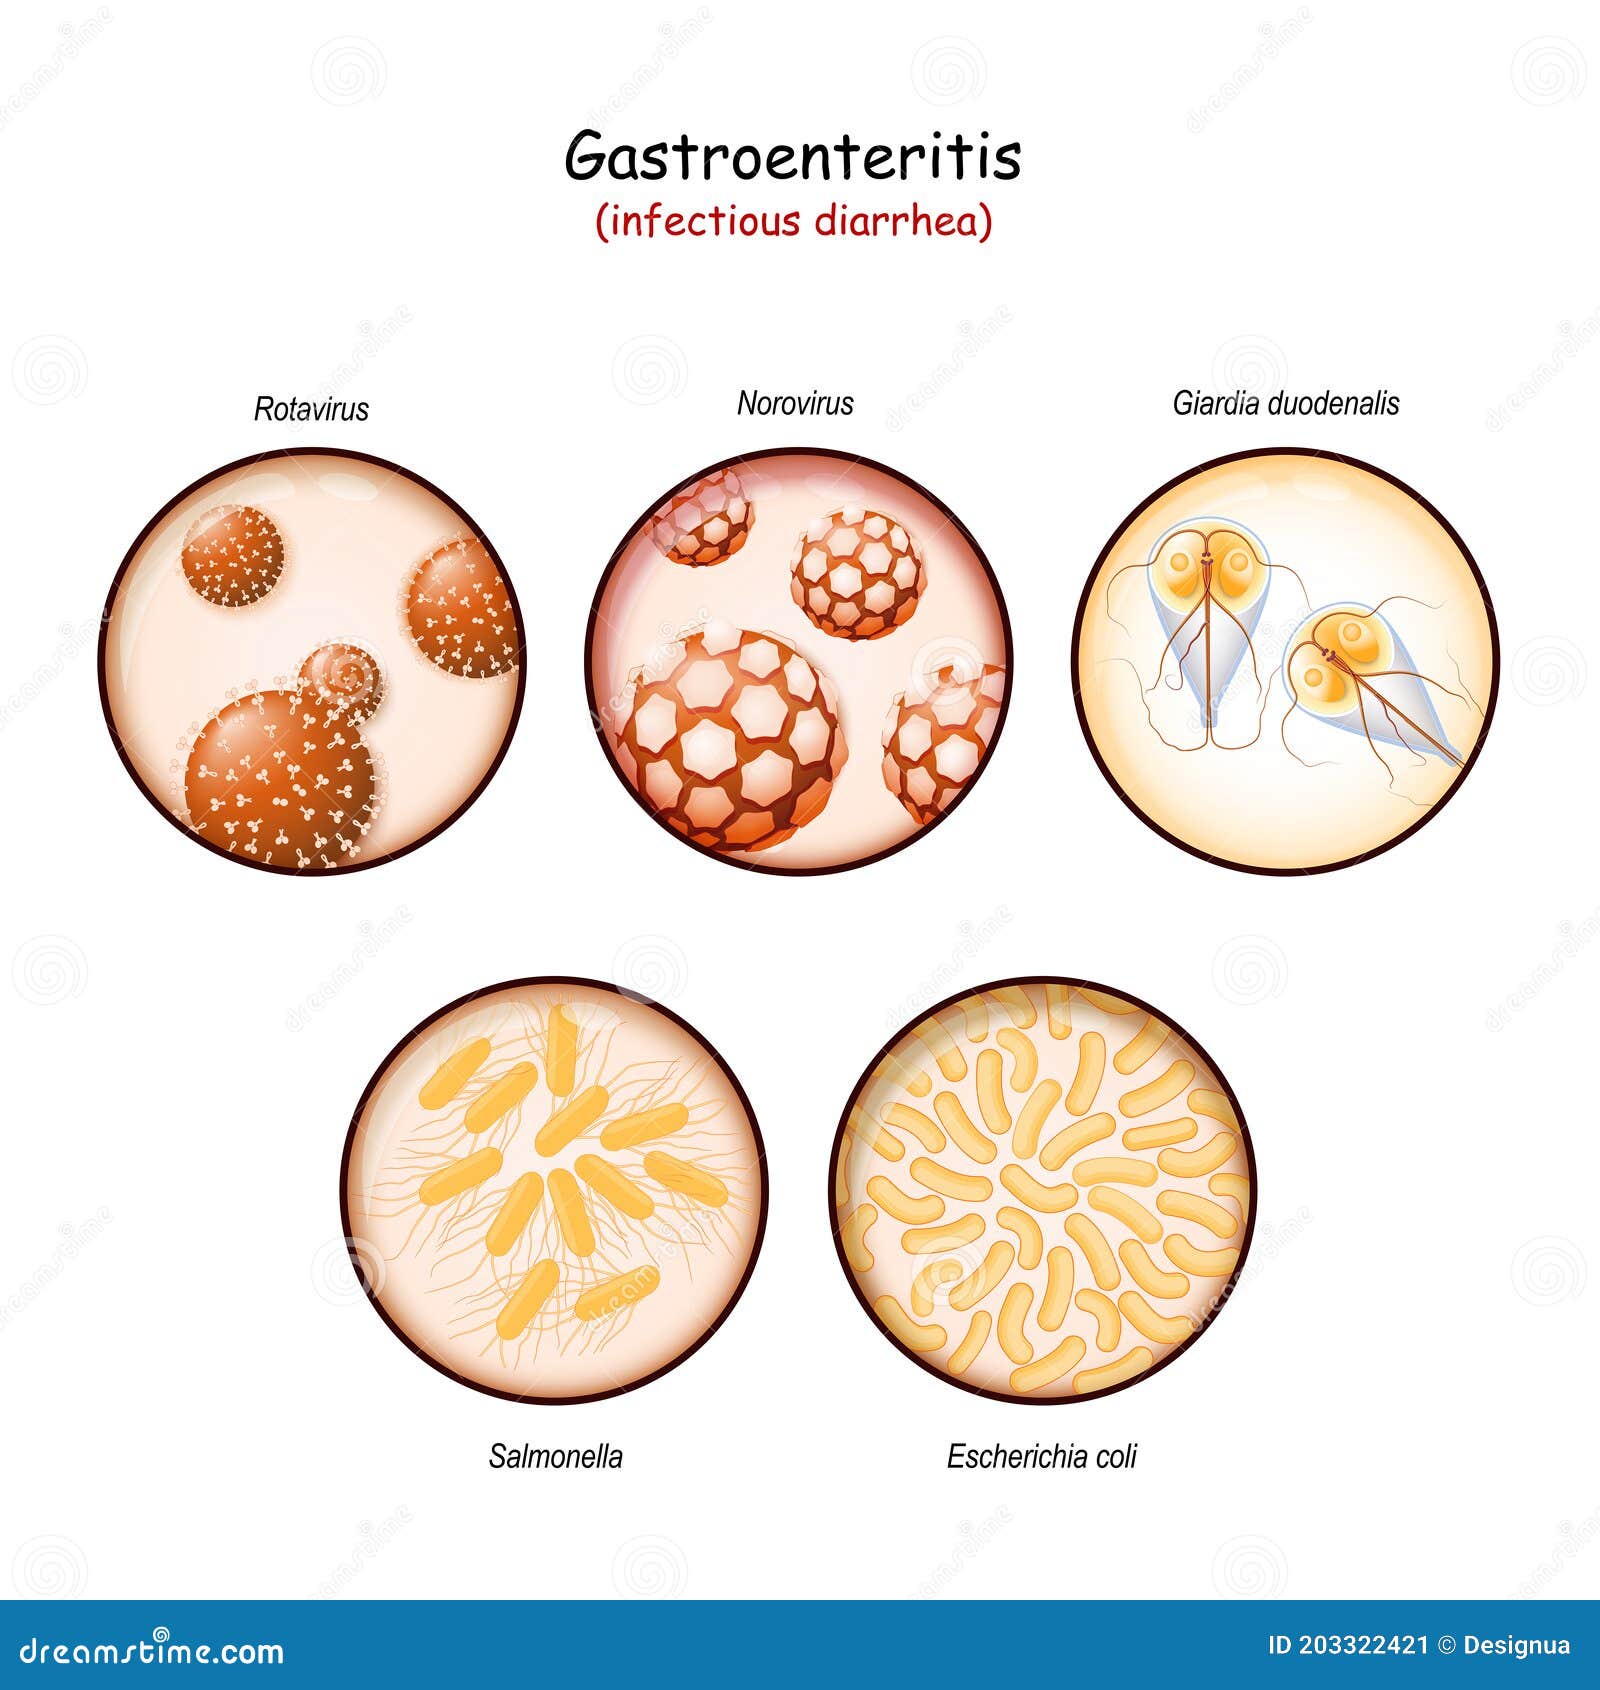 giardiasis bacteria or virus)